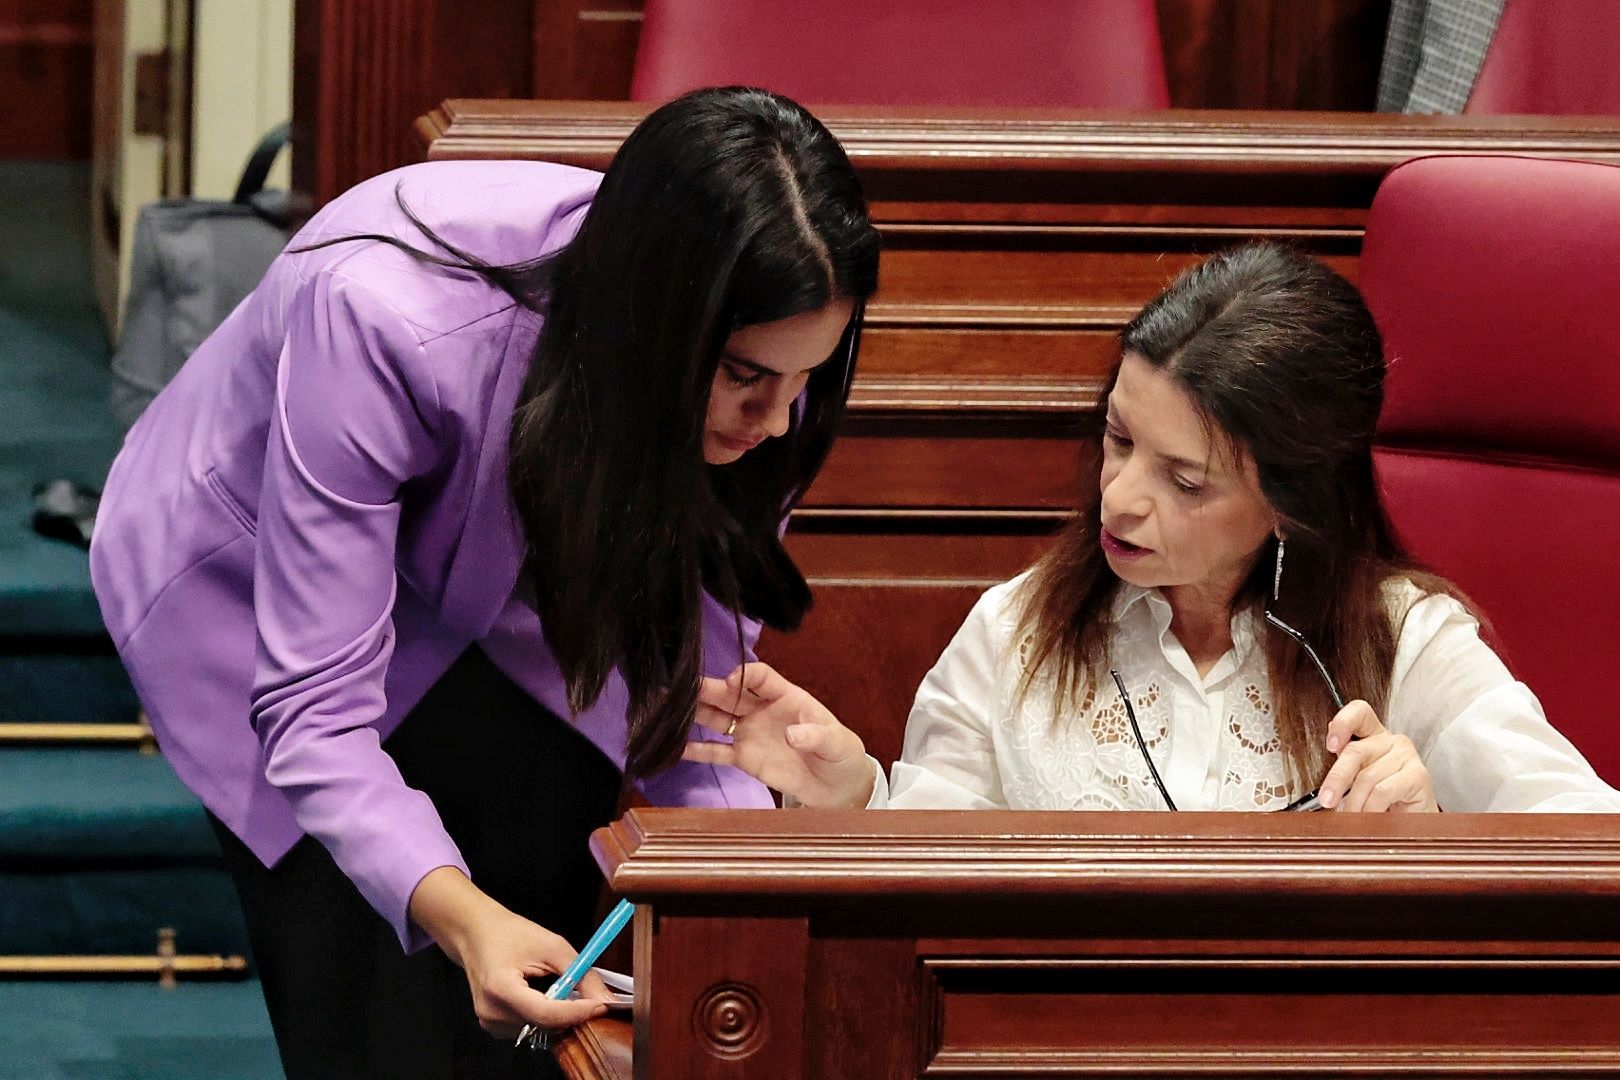 El pleno del Parlamento de Canarias celebra el debate final del proyecto de ley de presupuestos de la Comunidad Autónoma para 2023